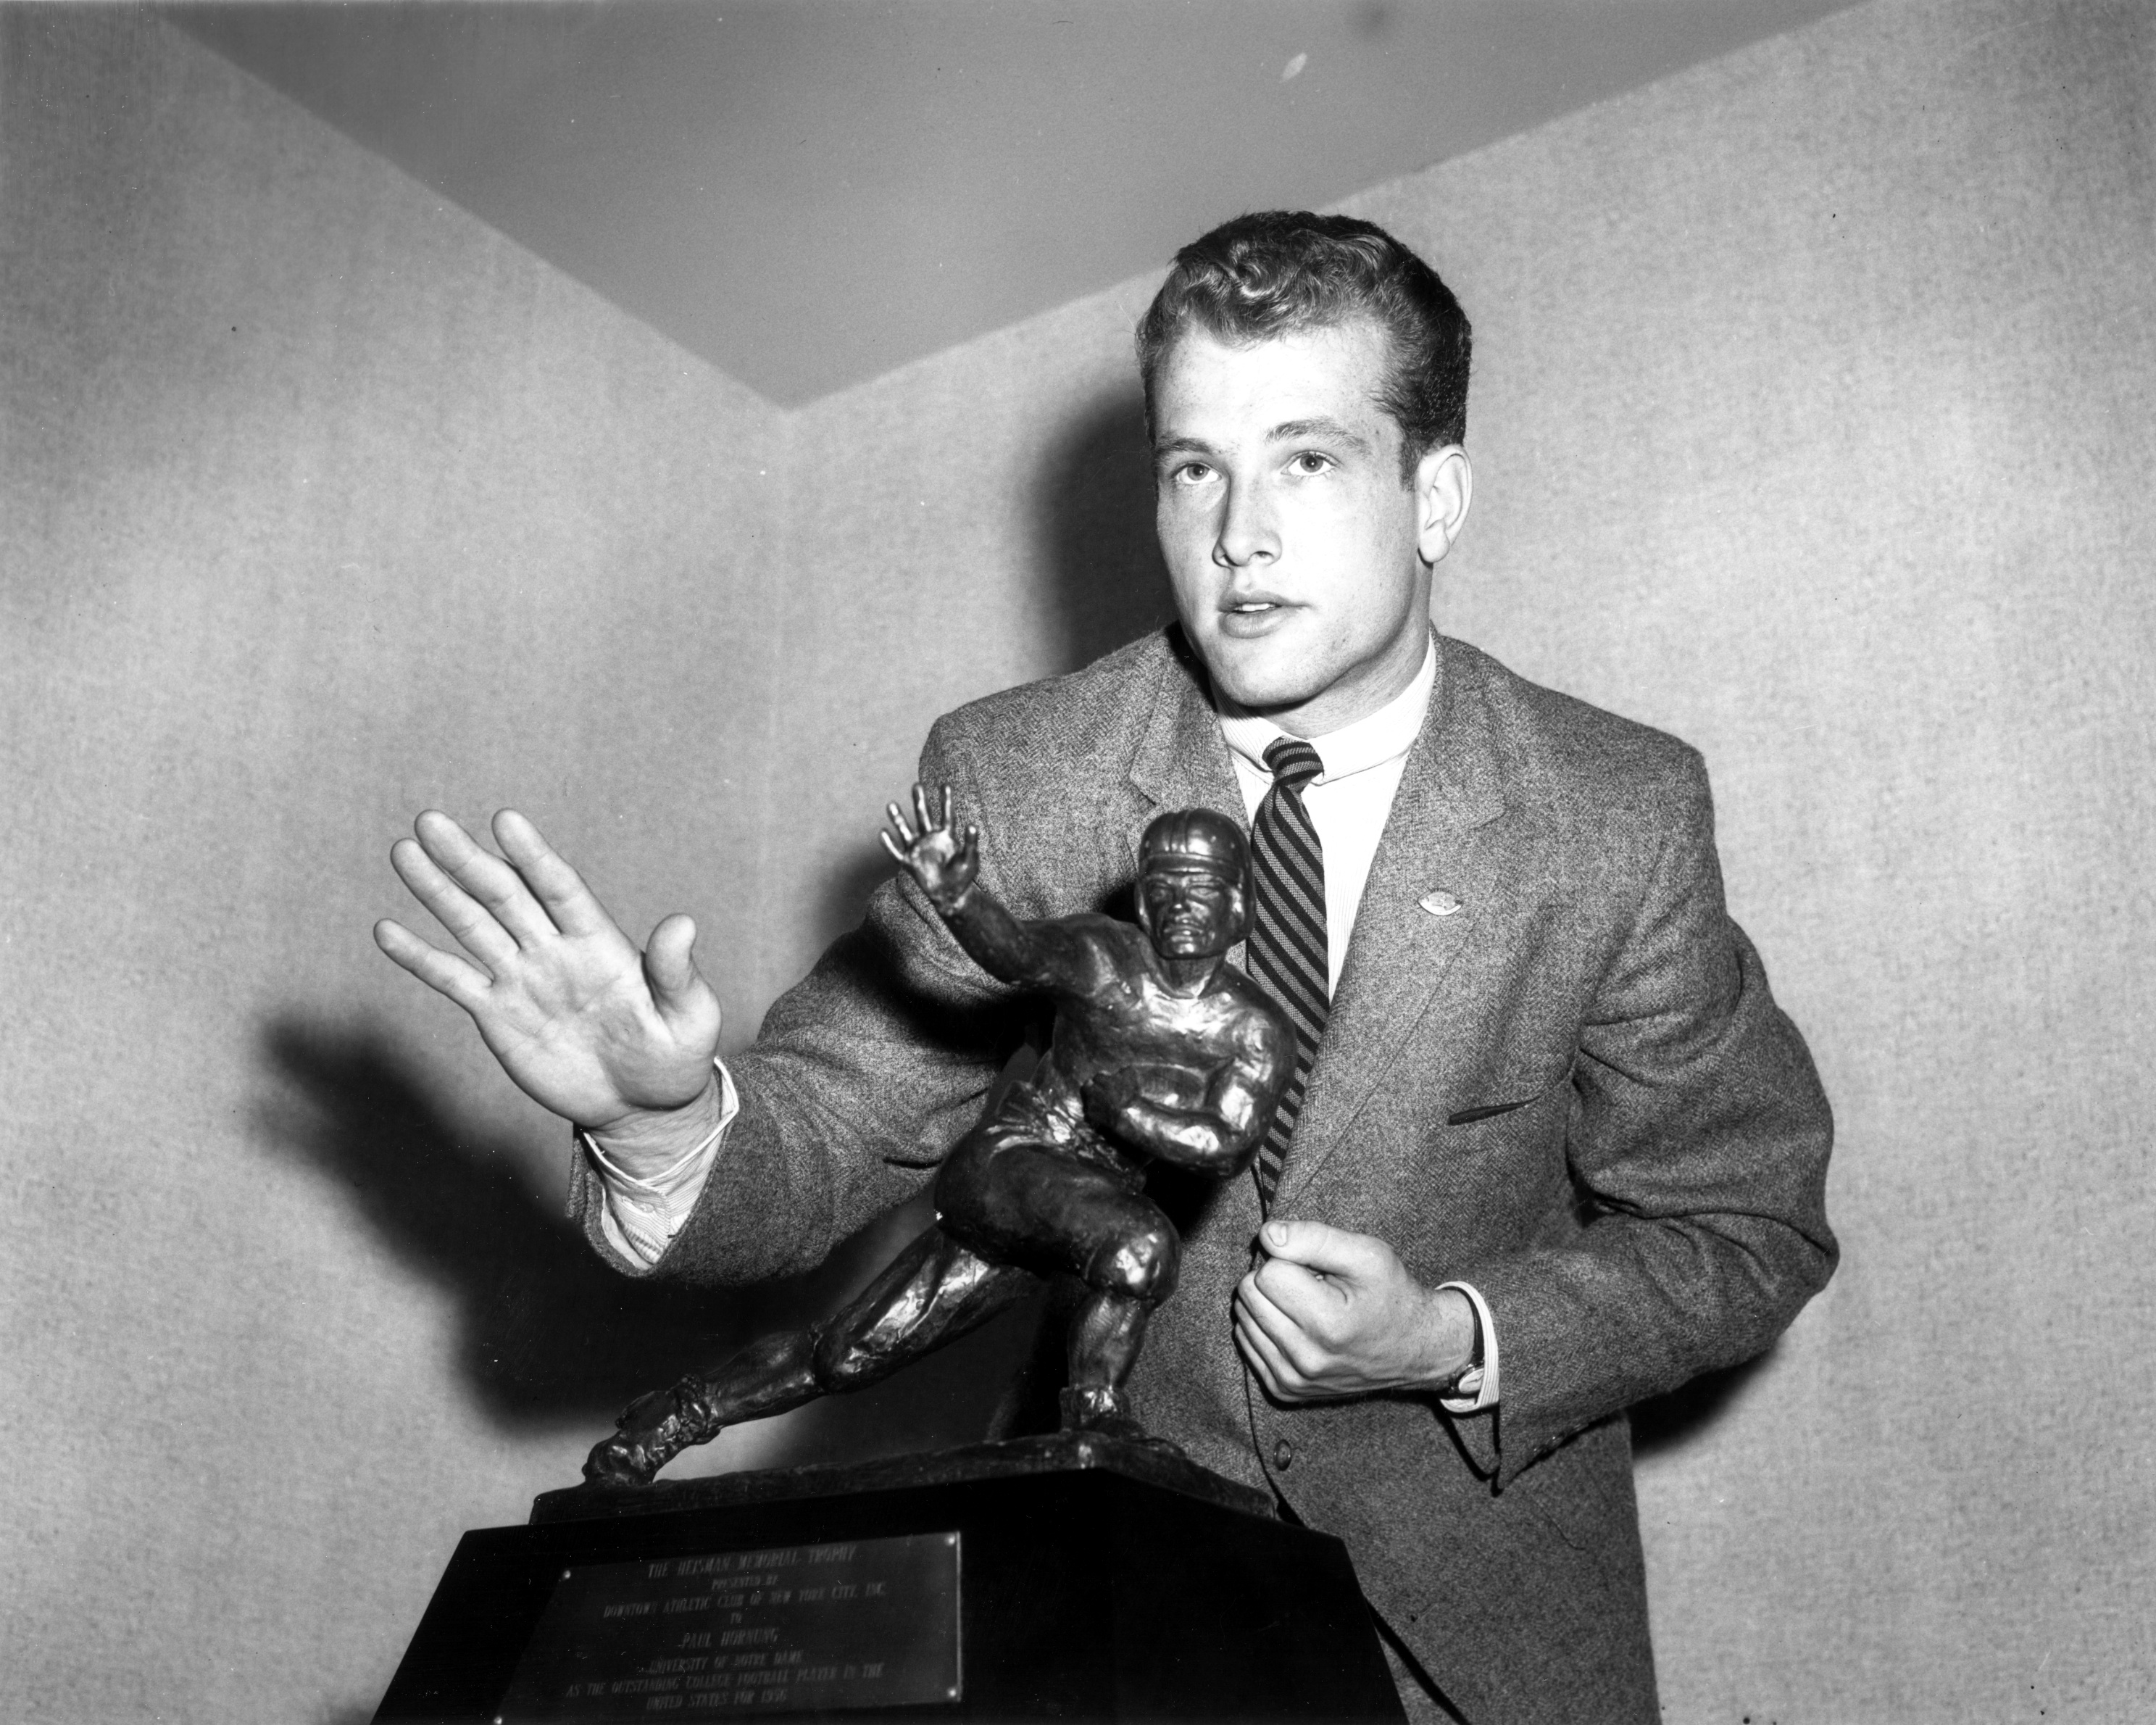 Paul-Hornung-with-Heisman-Trophy-1956.jpg